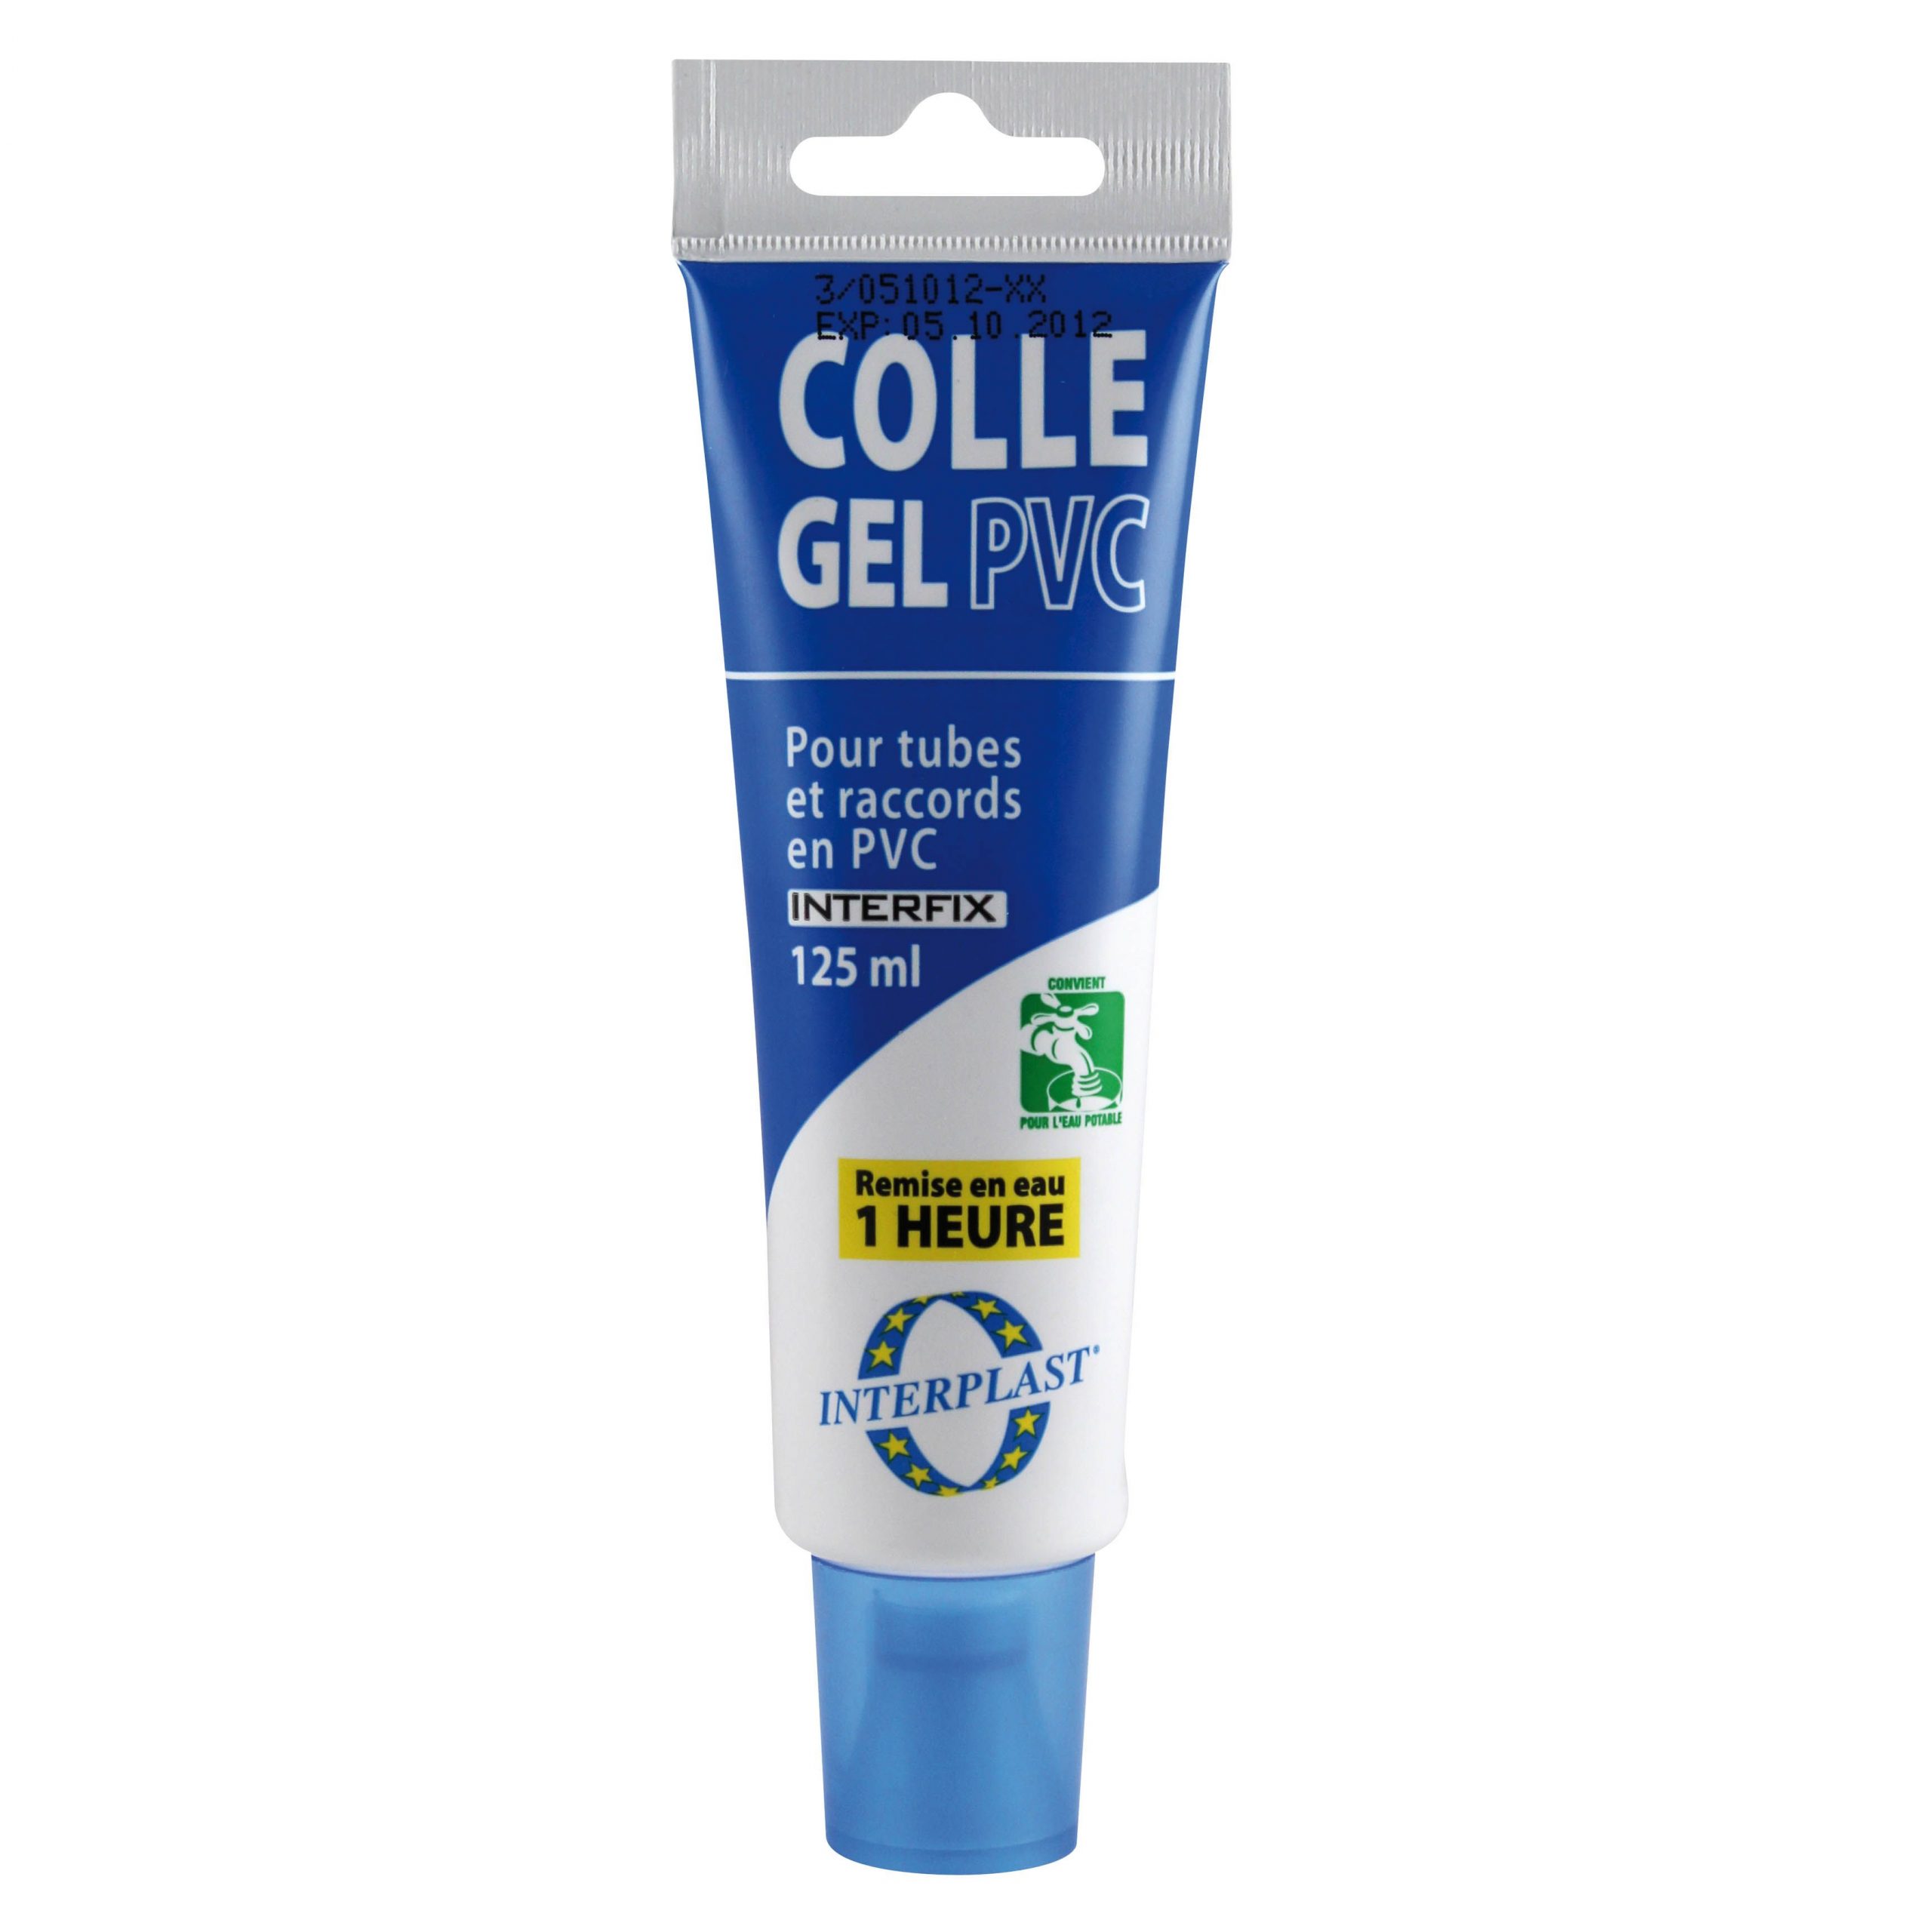 Colle pvc rigide gel aqua incolore - tube de 125ml - Manubricole